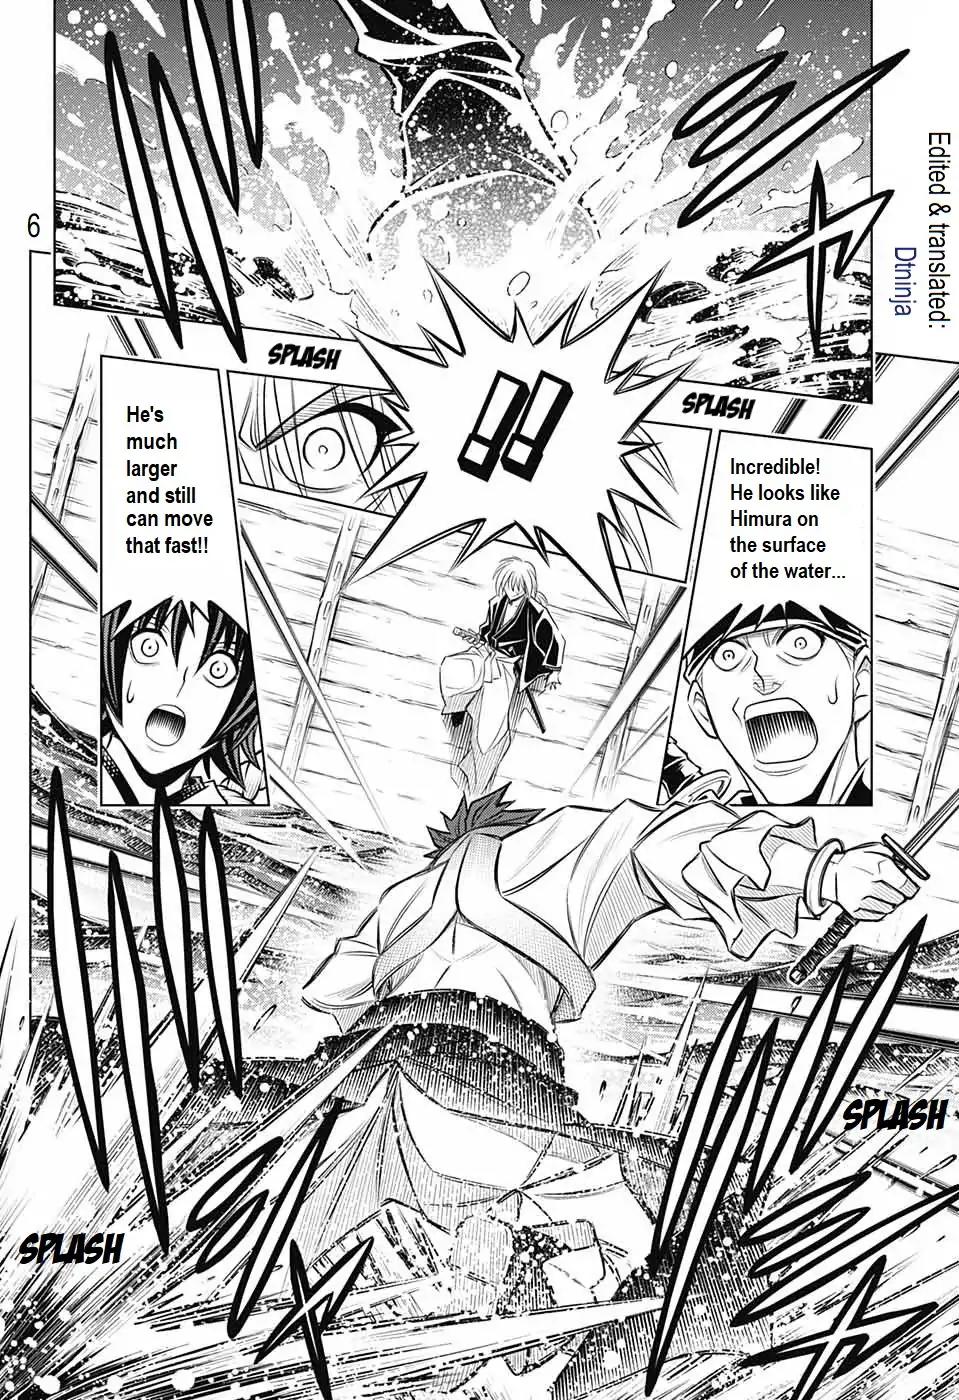 Rurouni Kenshin: Hokkaido Arc Chapter 18: